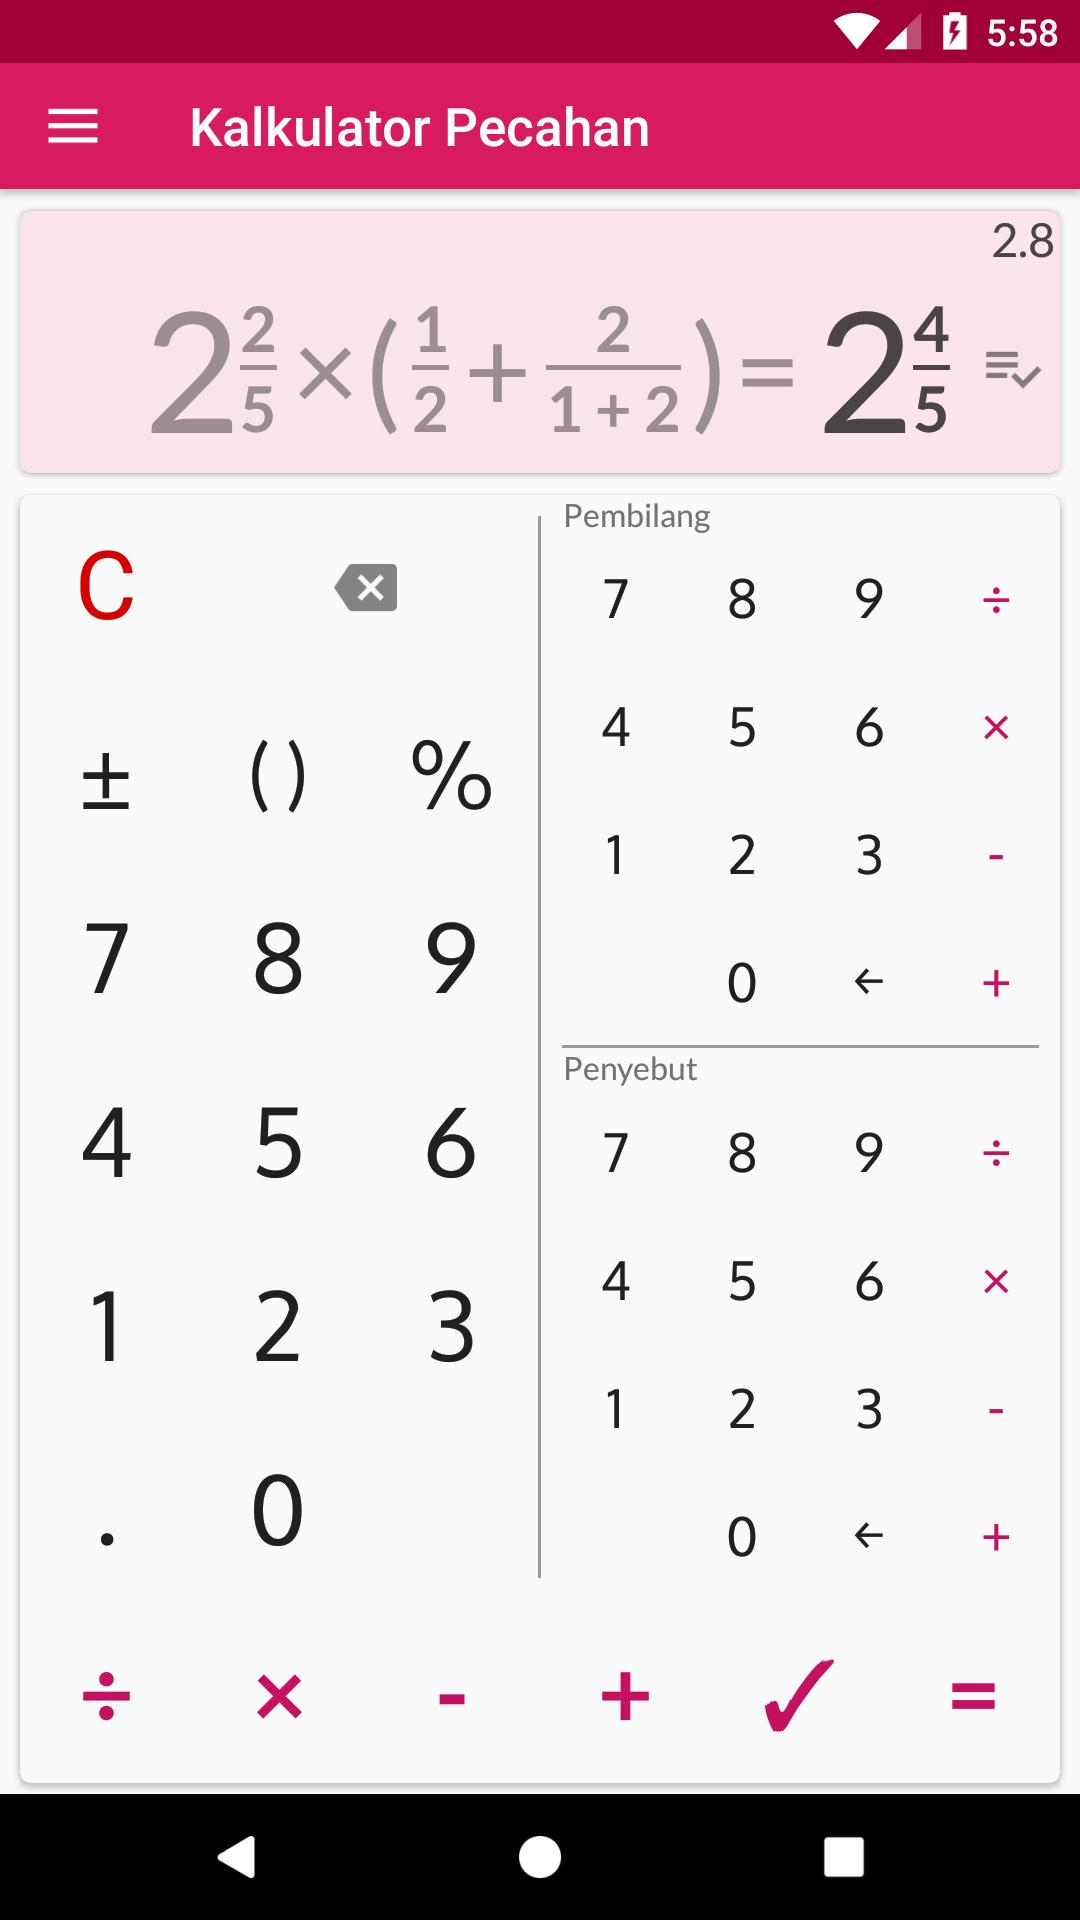 Kalkulator pecahan dengan solusinya for Android - APK Download